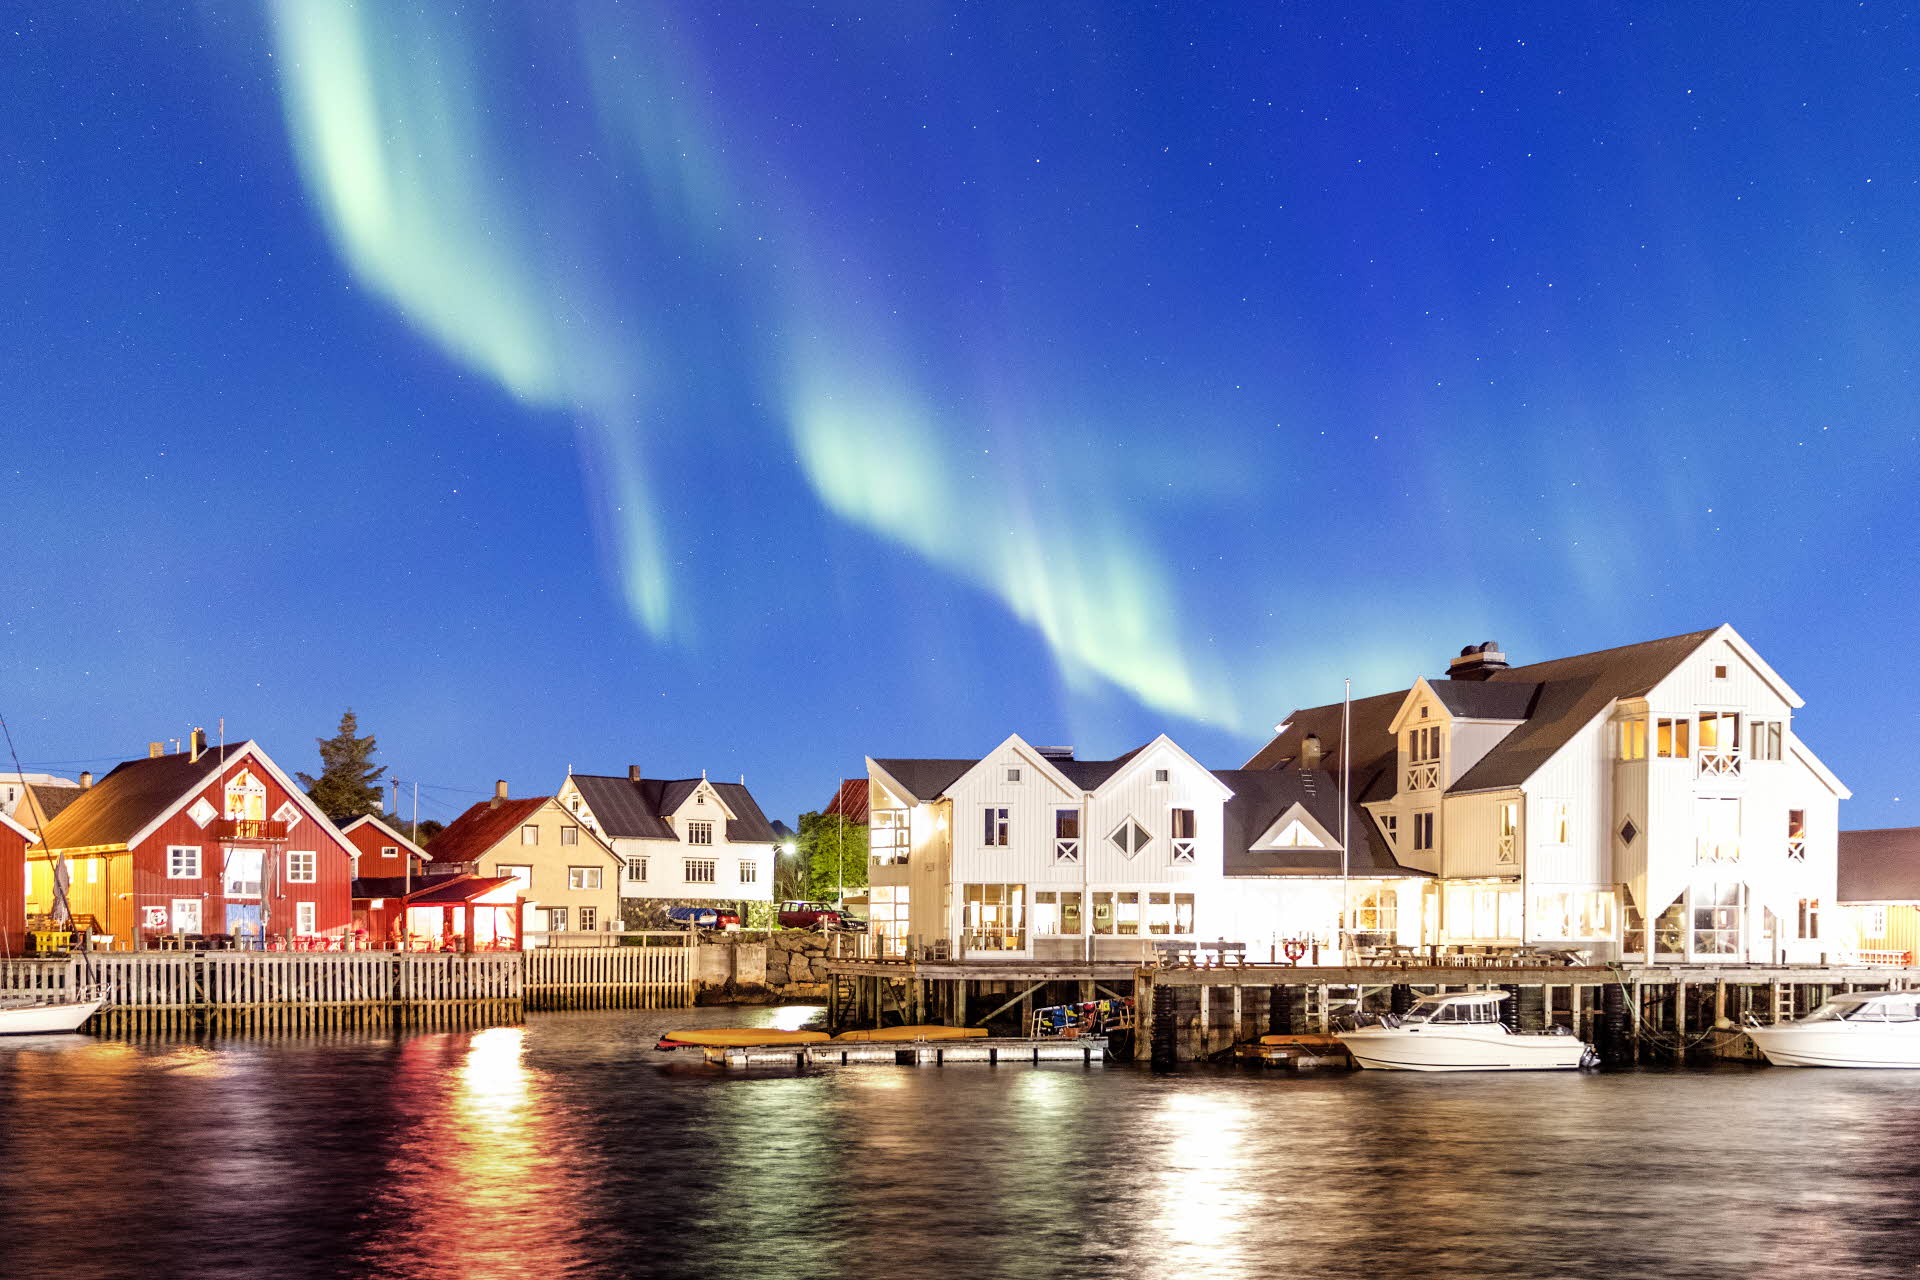 Les aurores boréales dans le ciel au-dessus de la jetée et du Henningsvær Bryggehotell. 